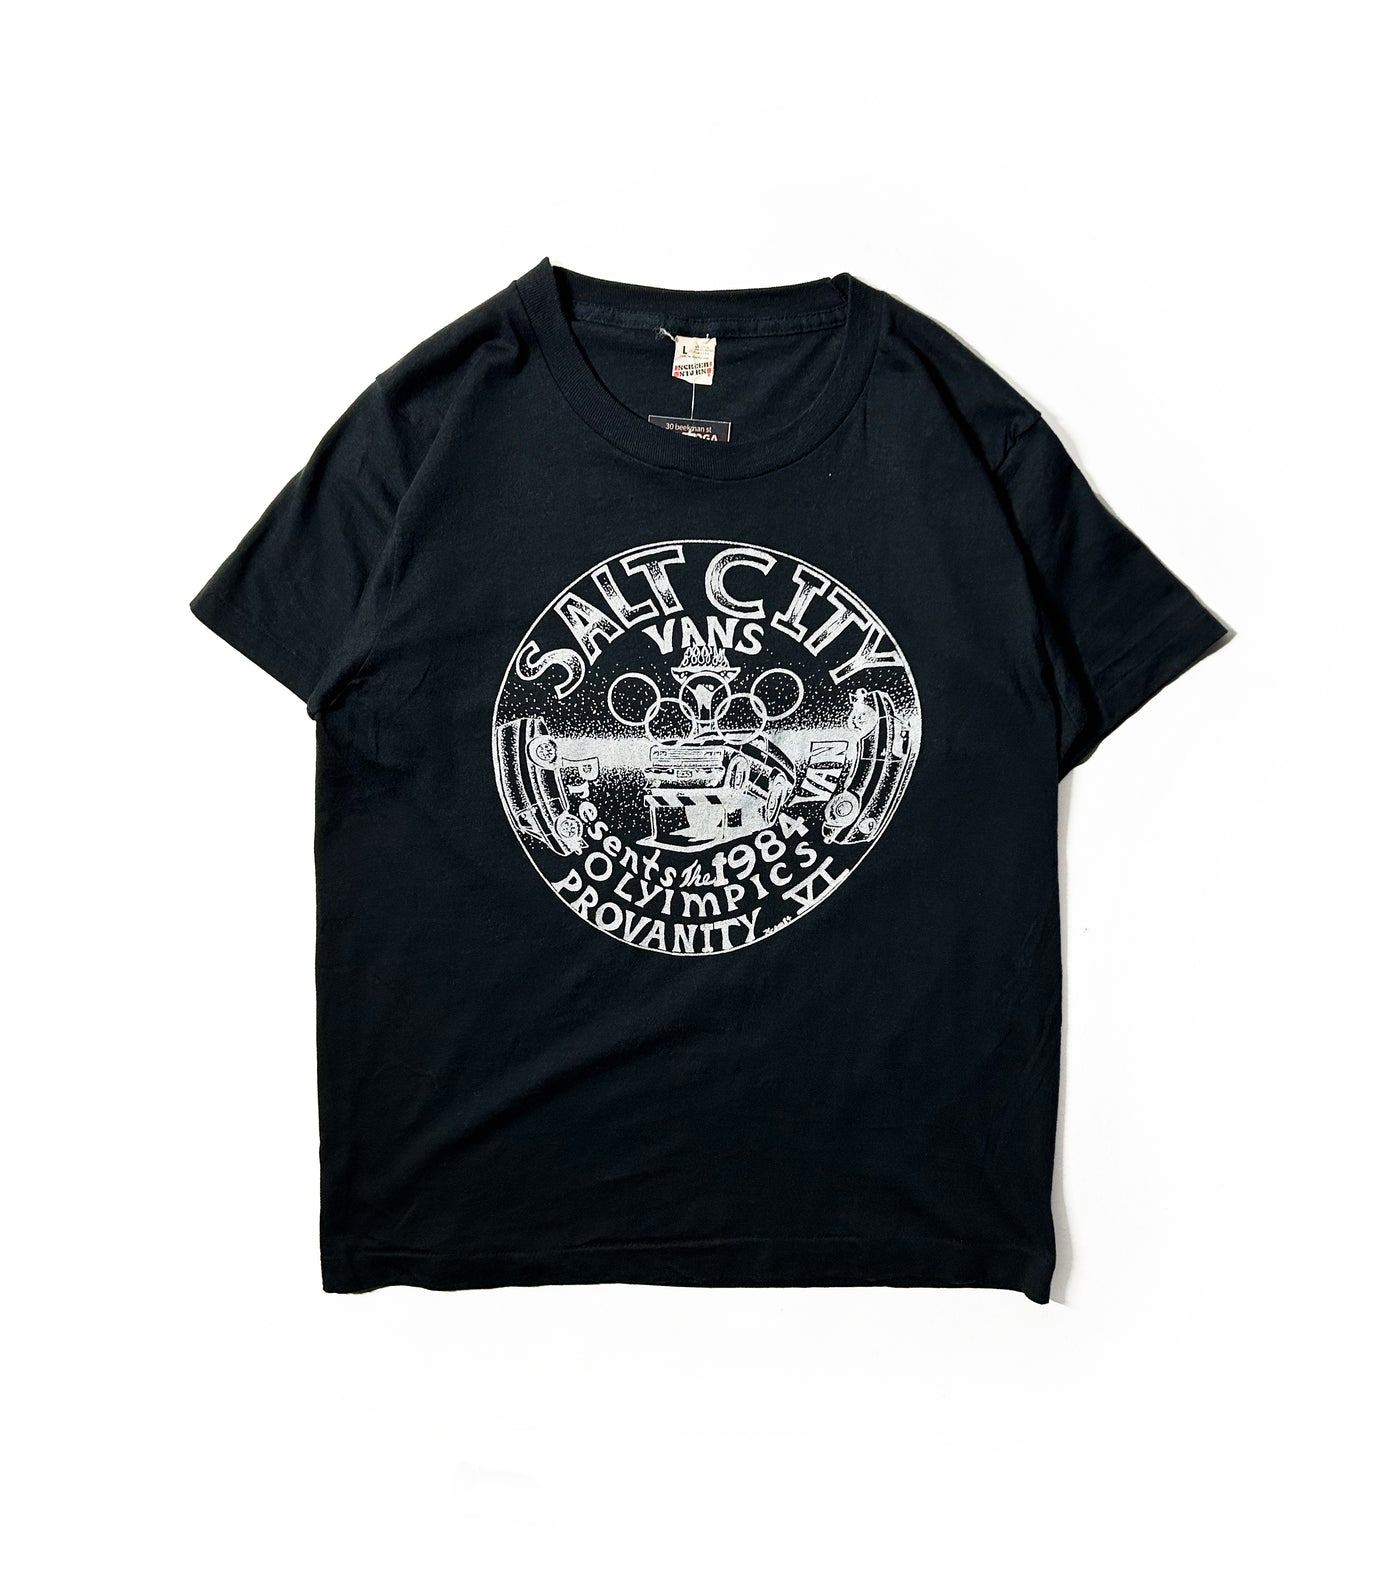 VIntage 1984 Salt City Vans Olympics T-Shirt